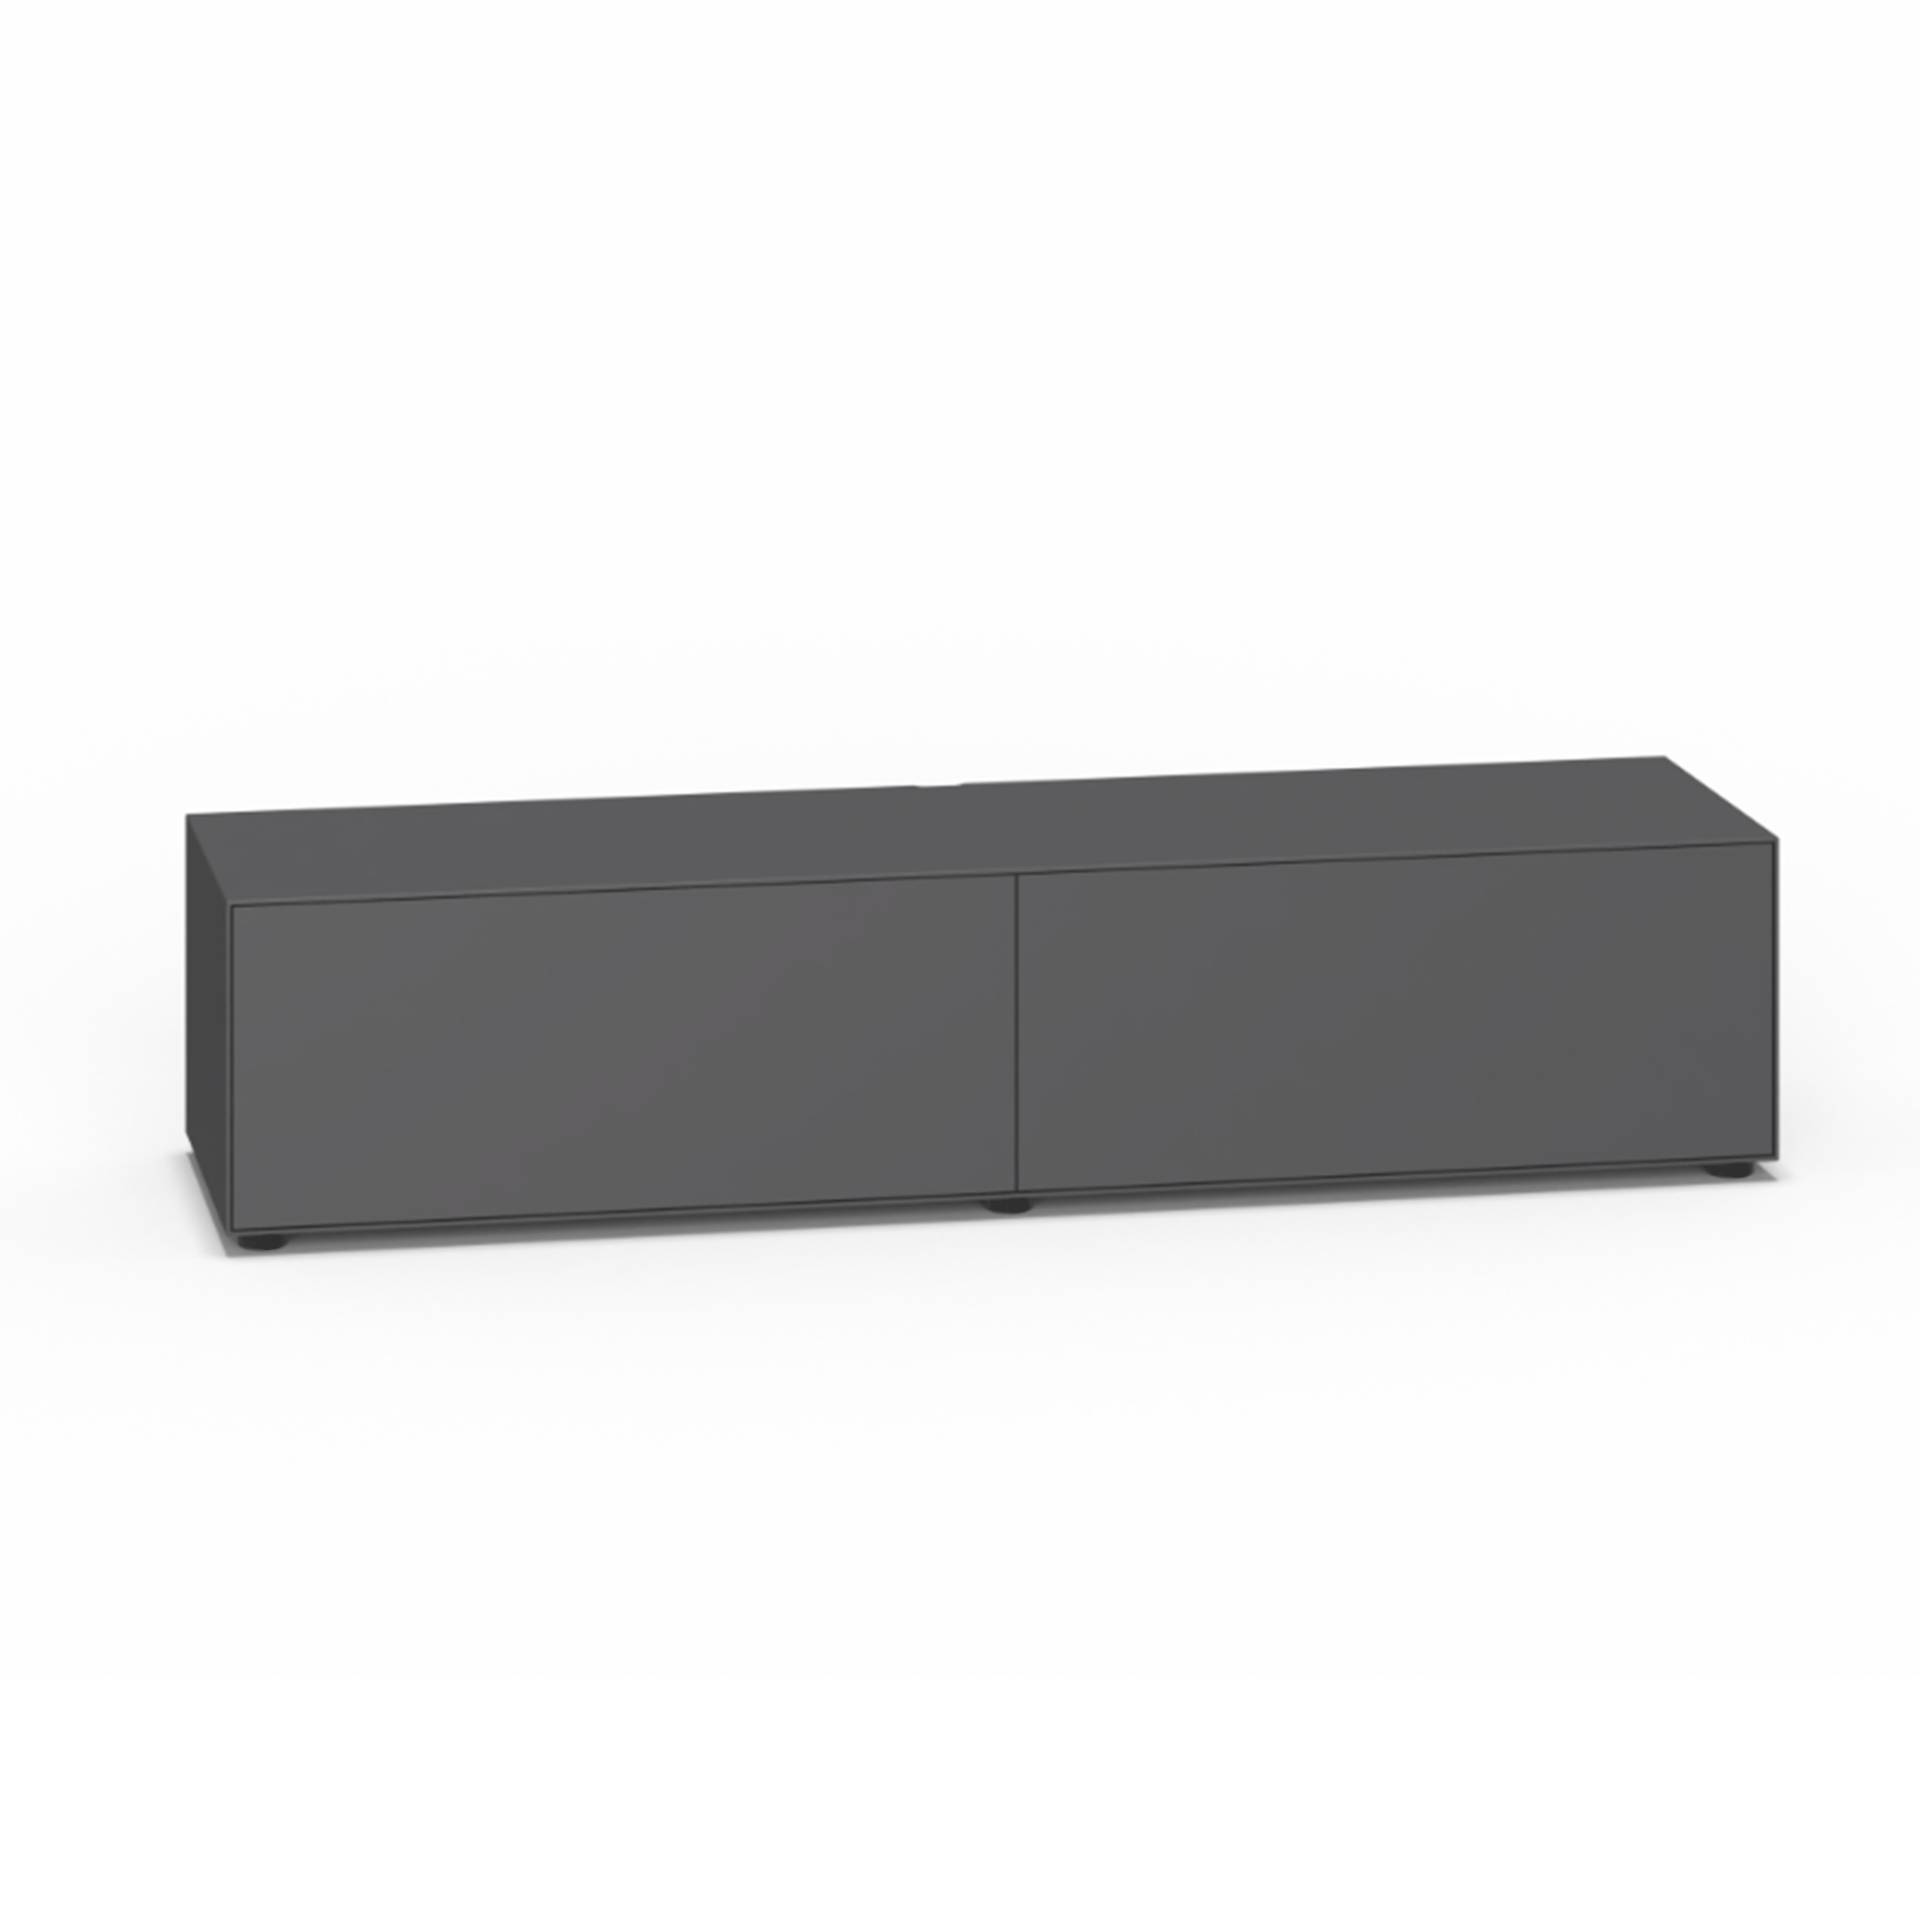 Piure - Nex Pur Box TV-Box 180x40x48cm - graphit/MDF matt lackiert/mit Gleitfüße/2 Fachböden/2 Kabelauslässe von Piure